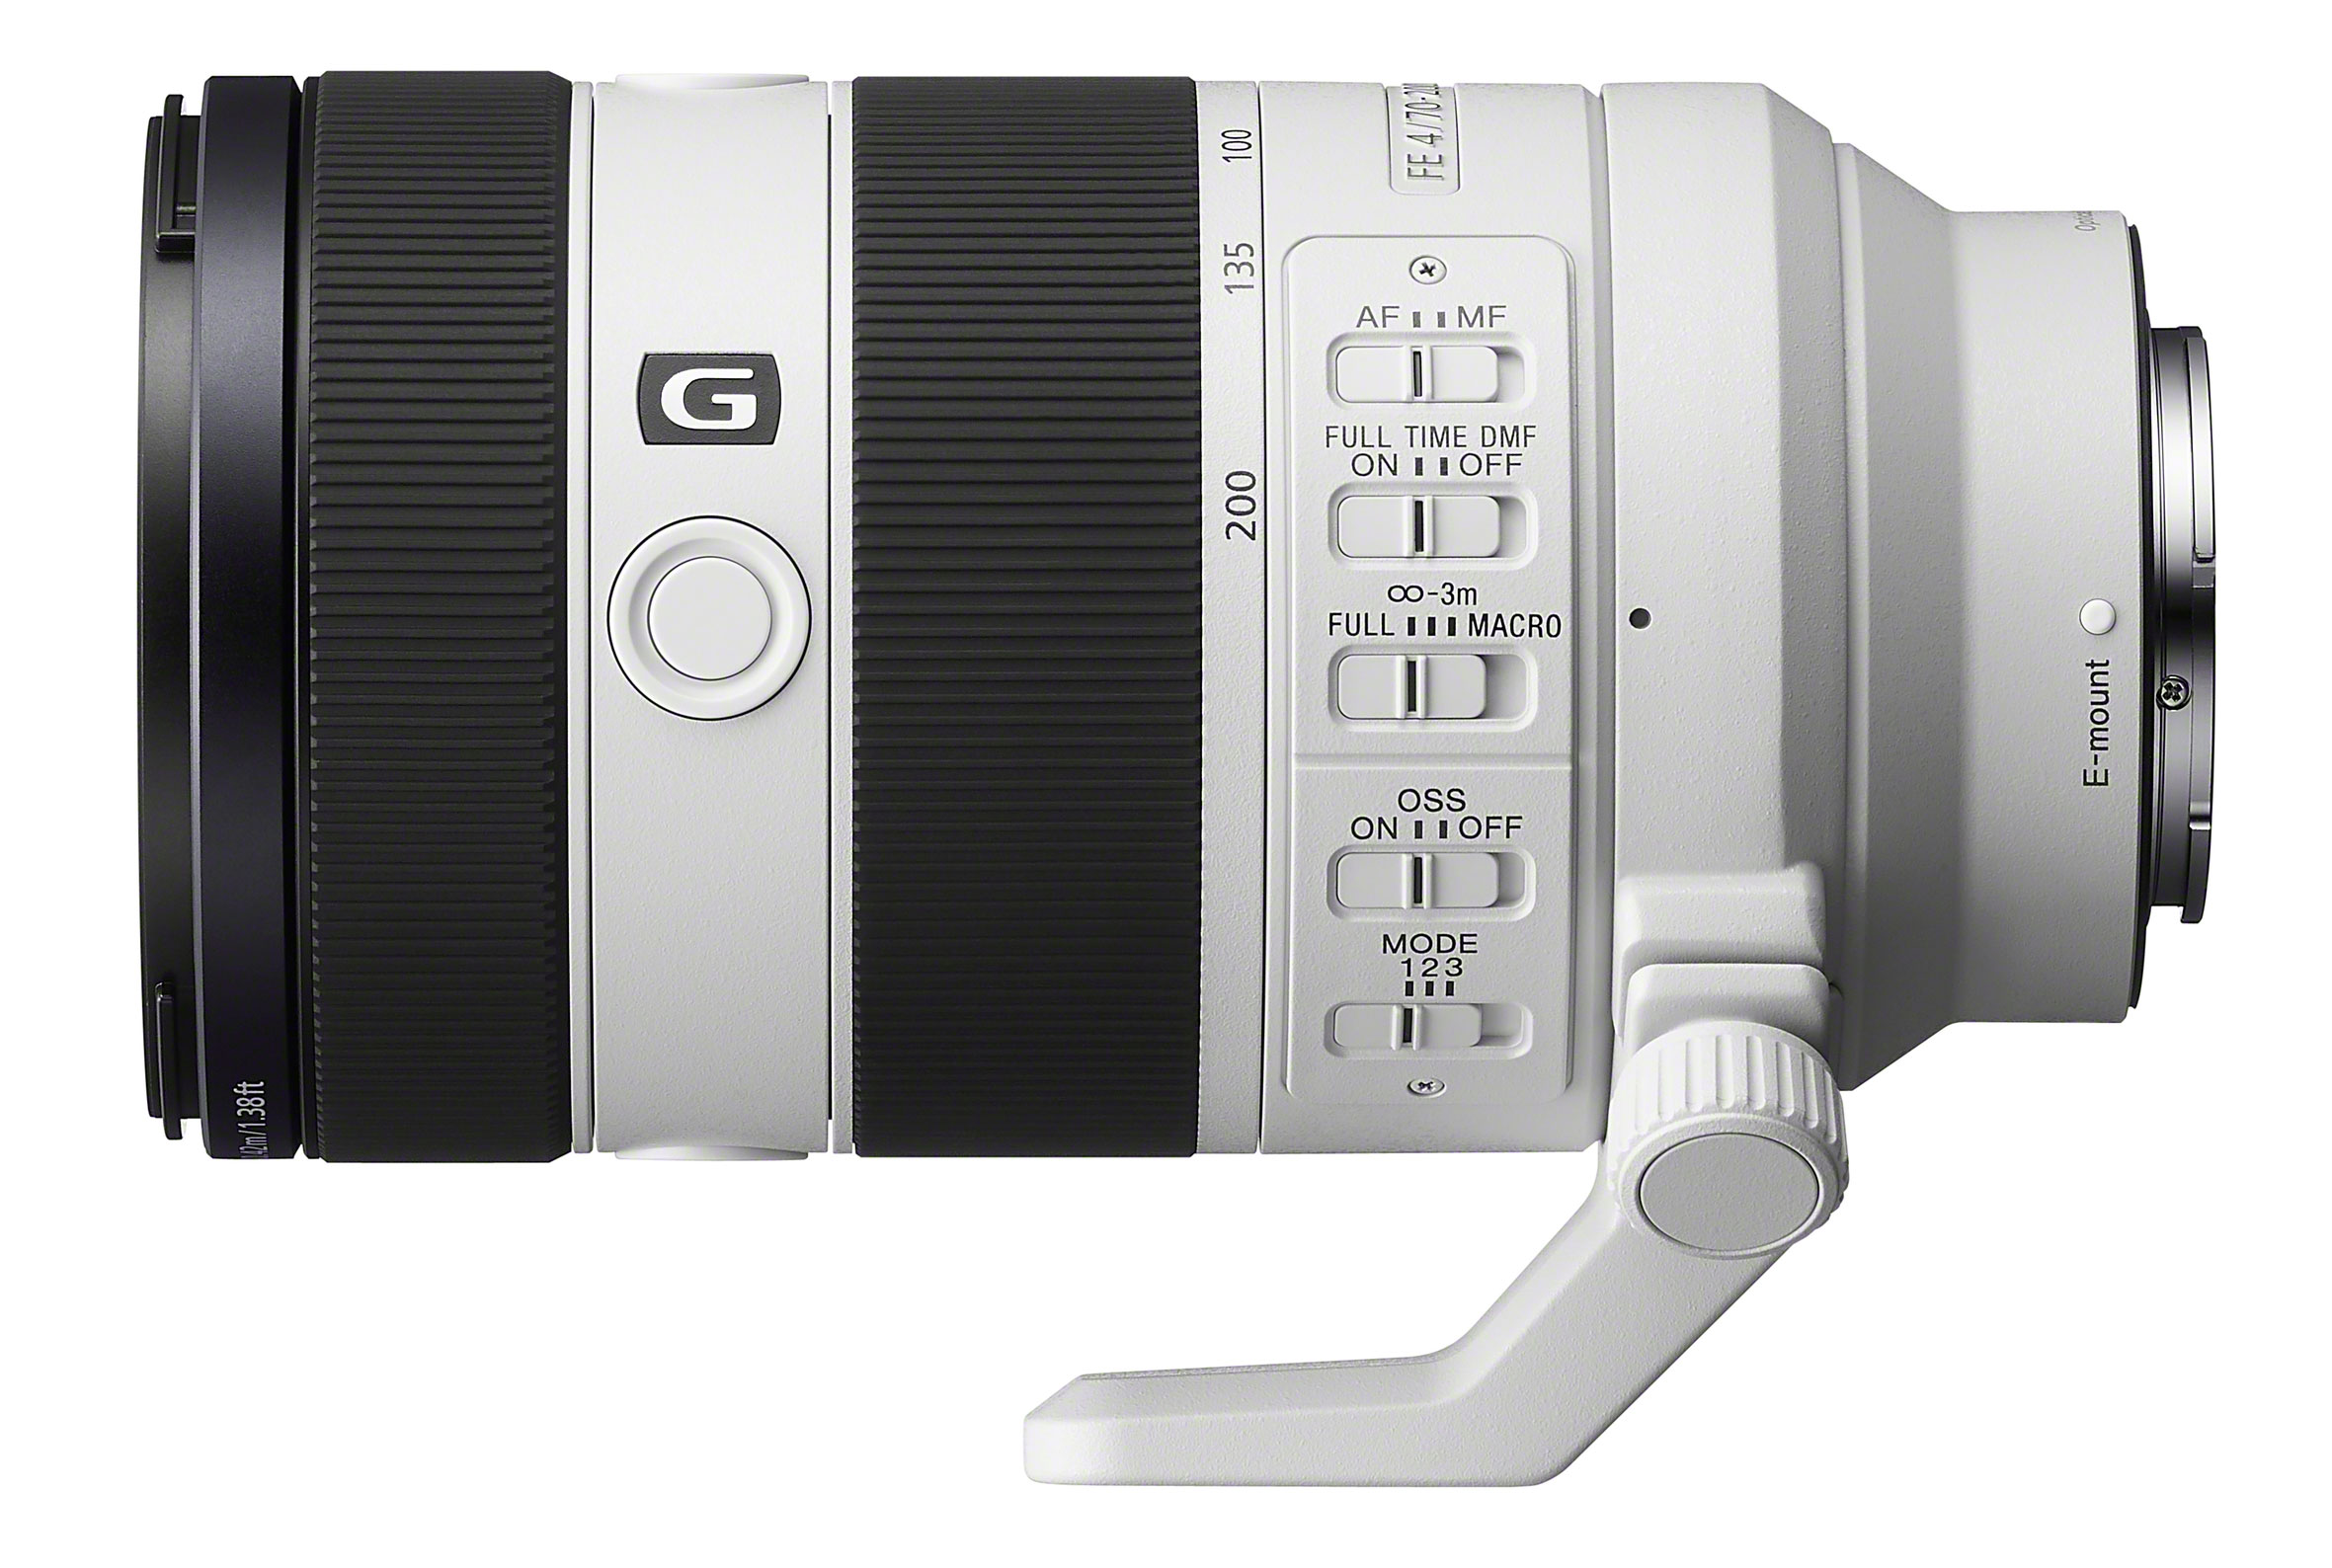 Sony FE 70-200mm f/4 Macro G OSS II